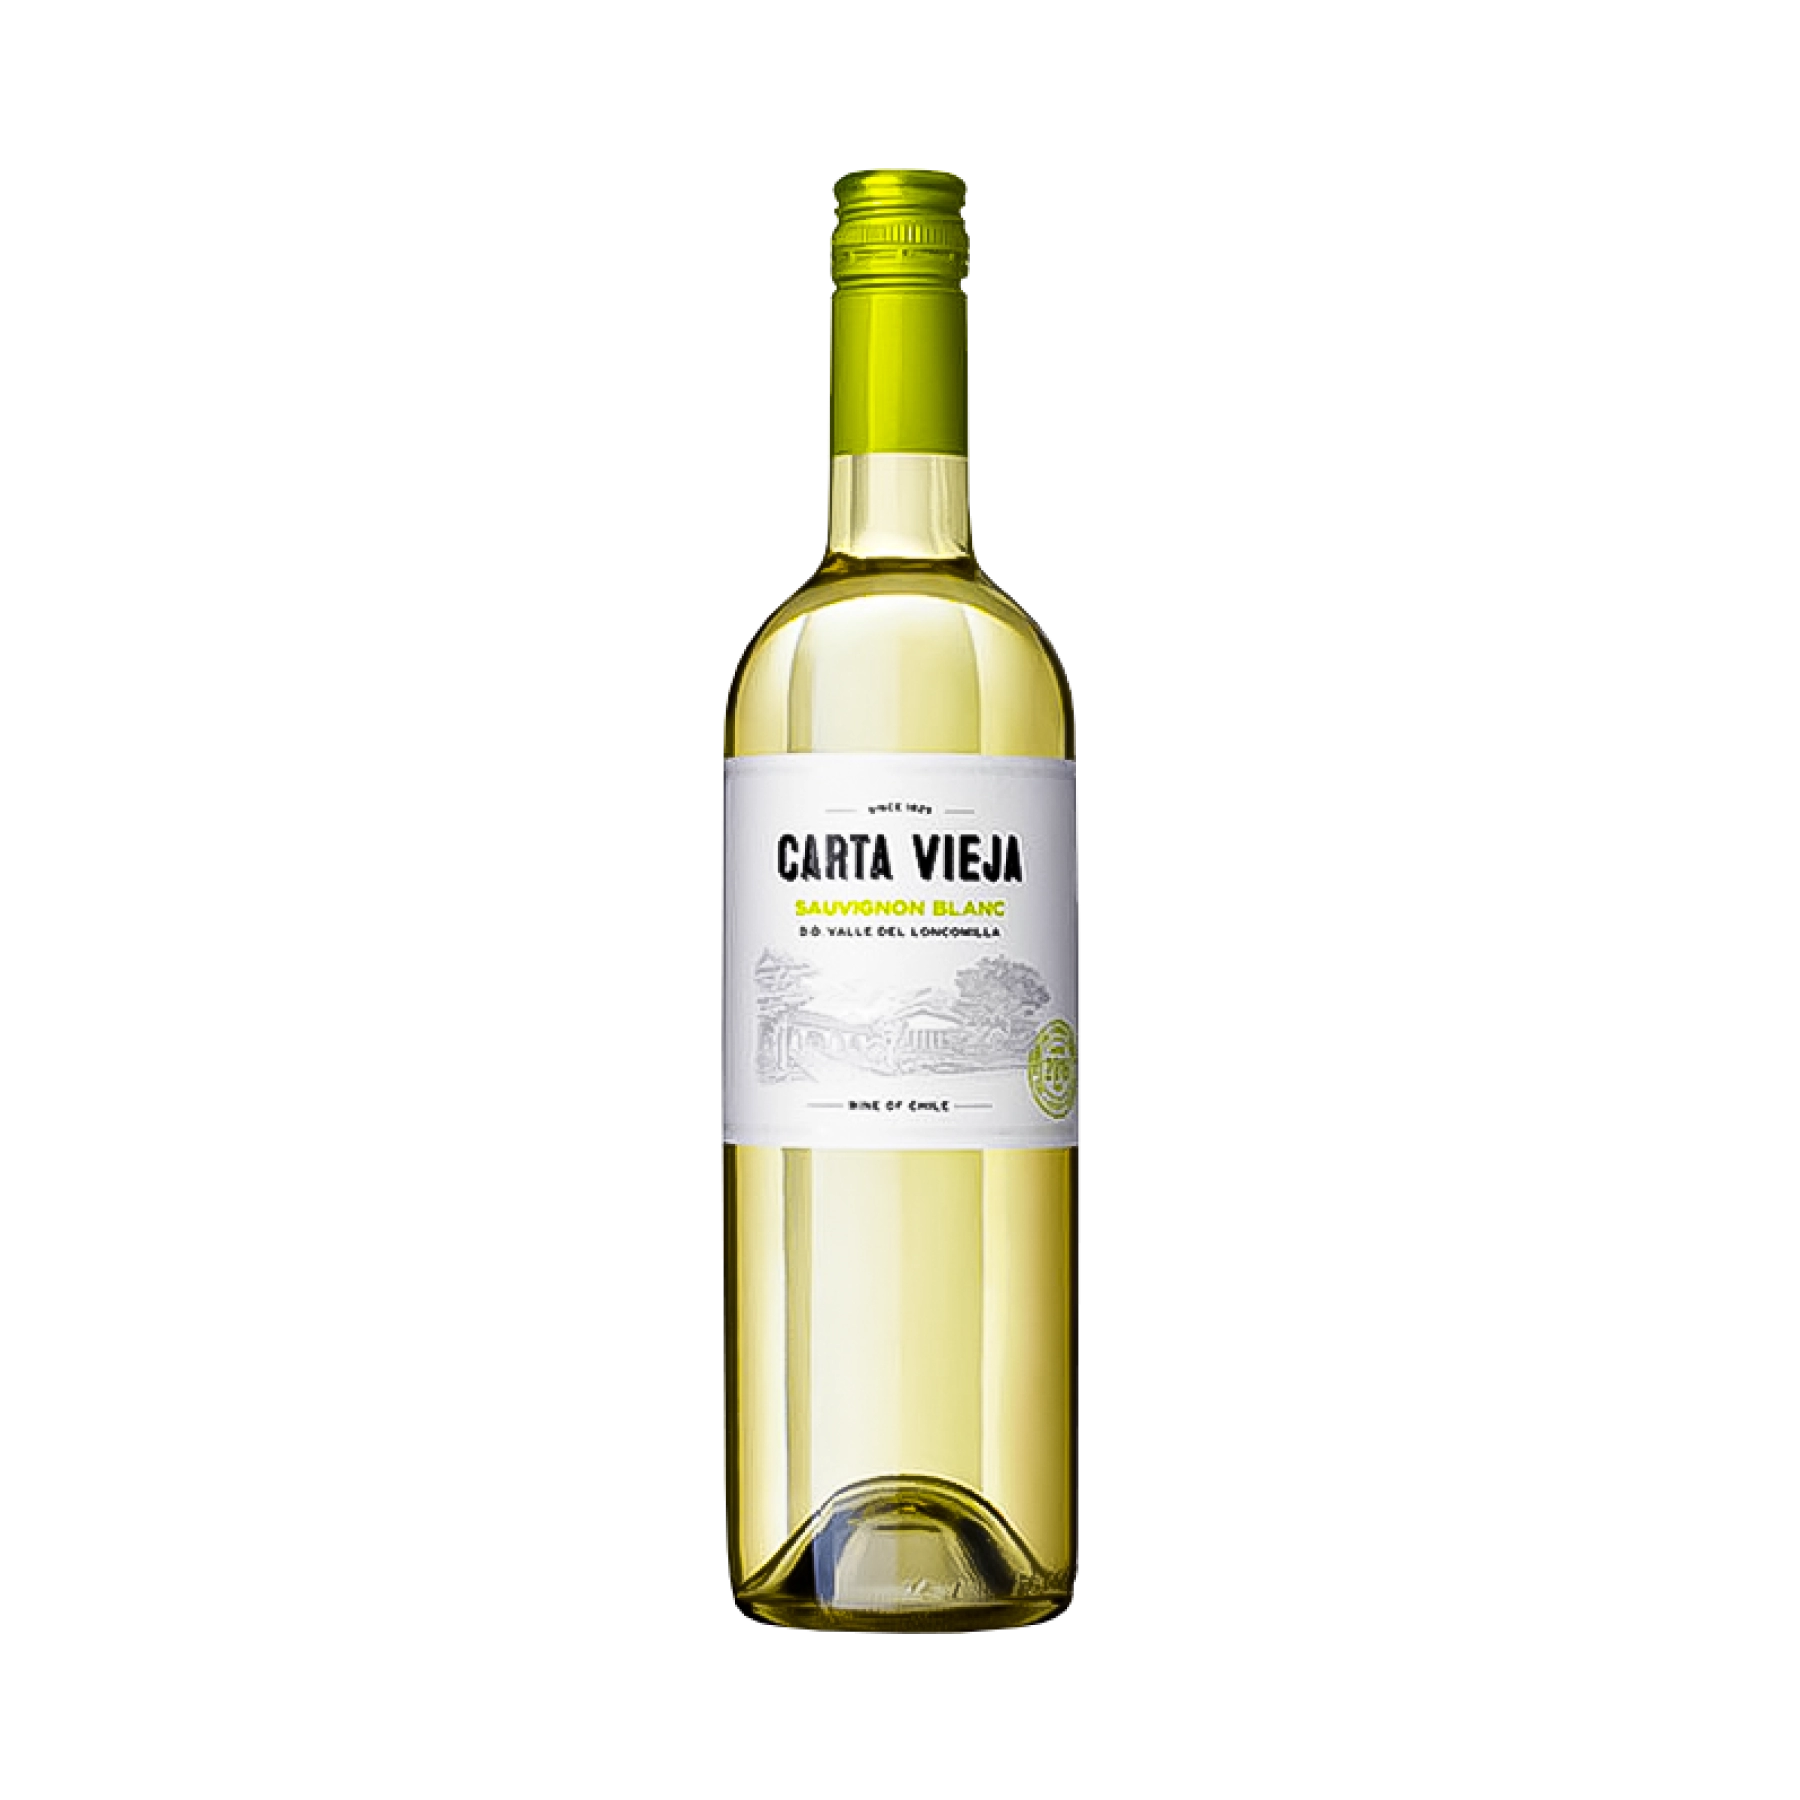 Rượu Vang Trắng Chile Carta Vieja Sauvignon Blanc